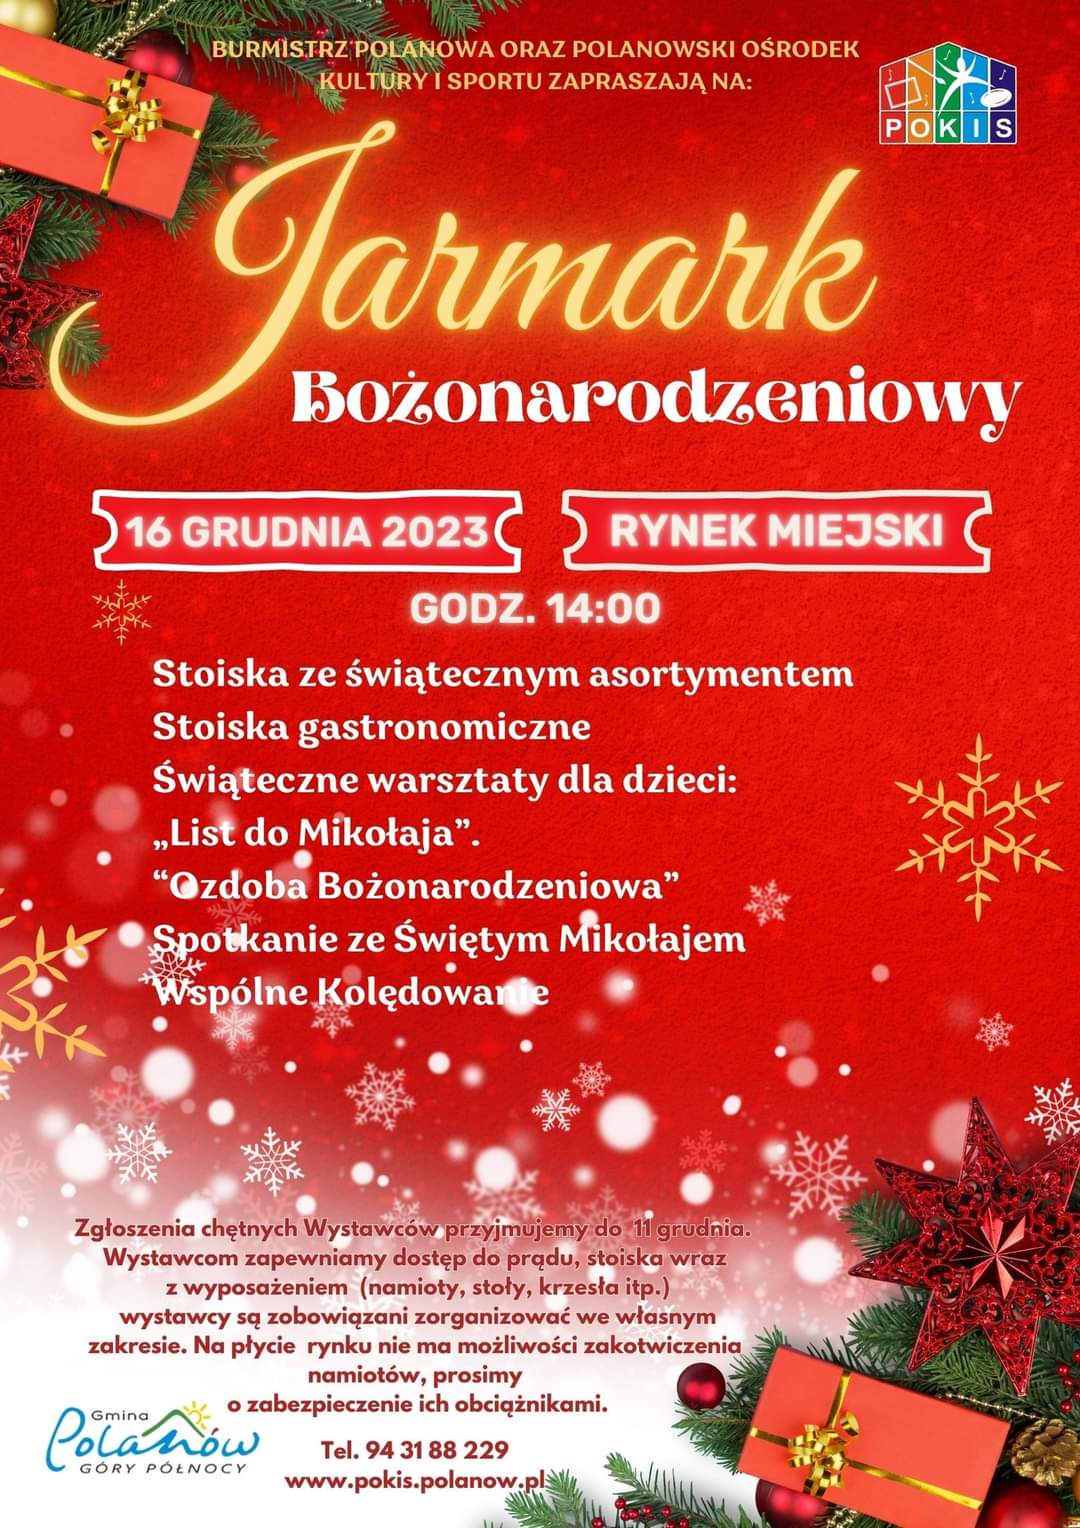 Plakat z zaproszeniem na jarmark bożonarodzeniowy w Polanowie 16 grudnia 2023 Rynek Miejski